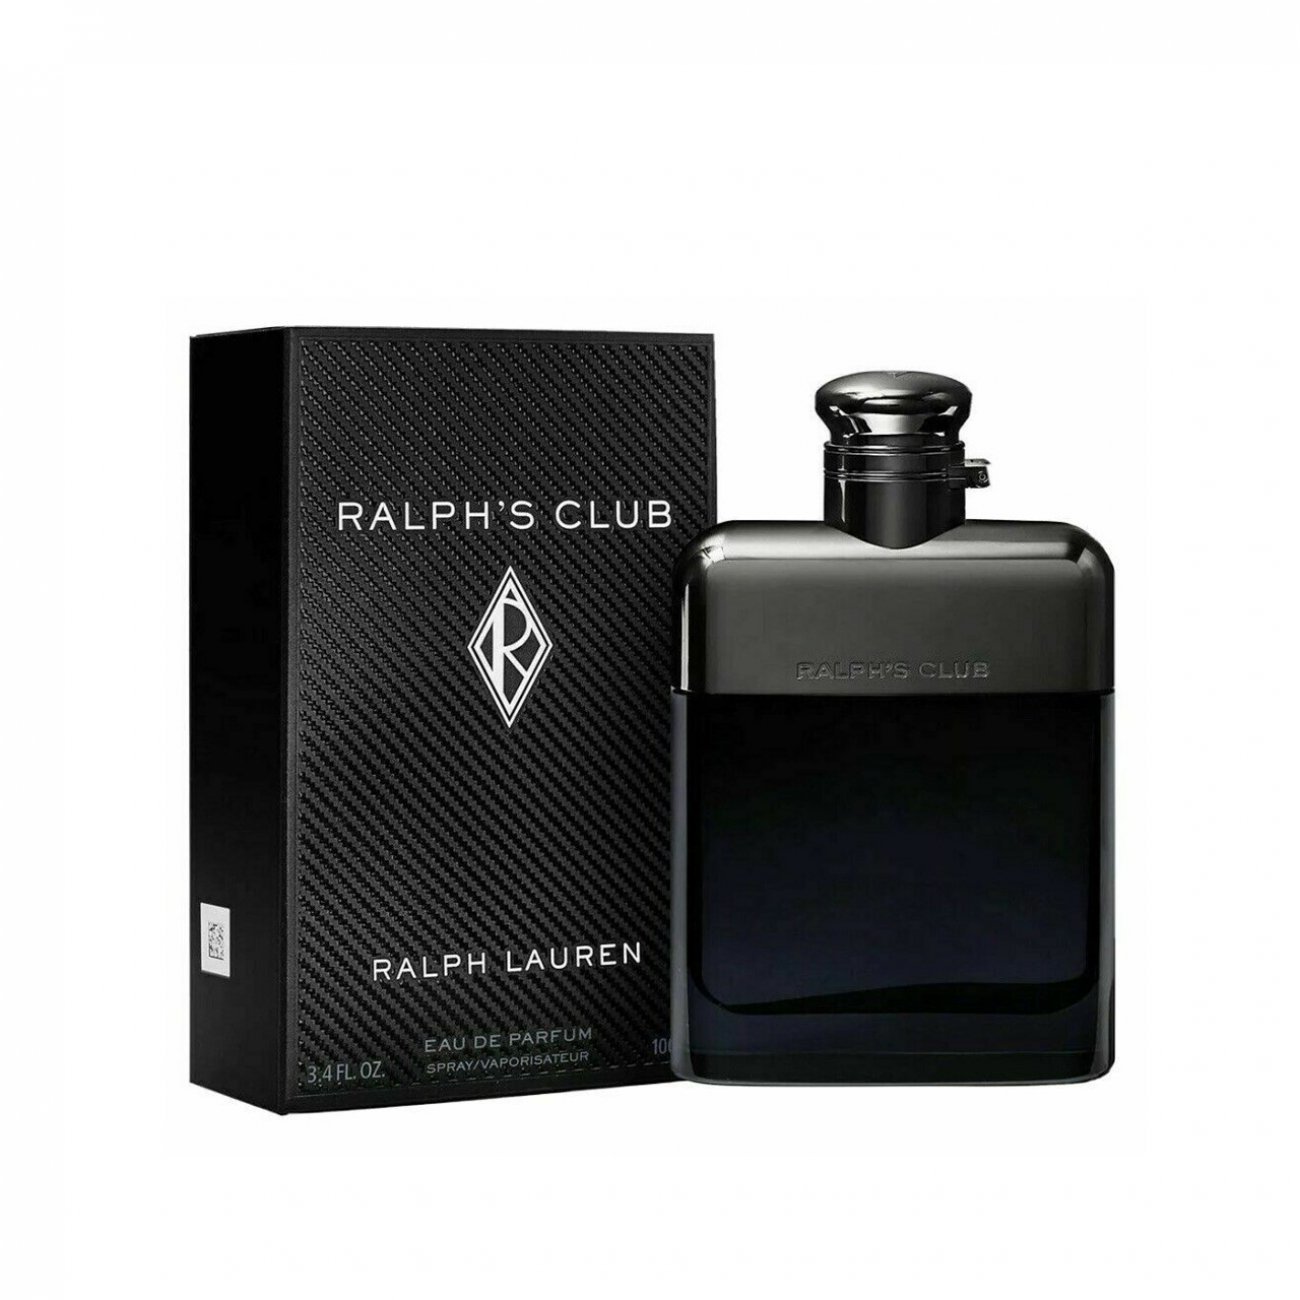 Buy Ralph Lauren Ralph's Club Eau de Parfum For Men 100ml · Philippines